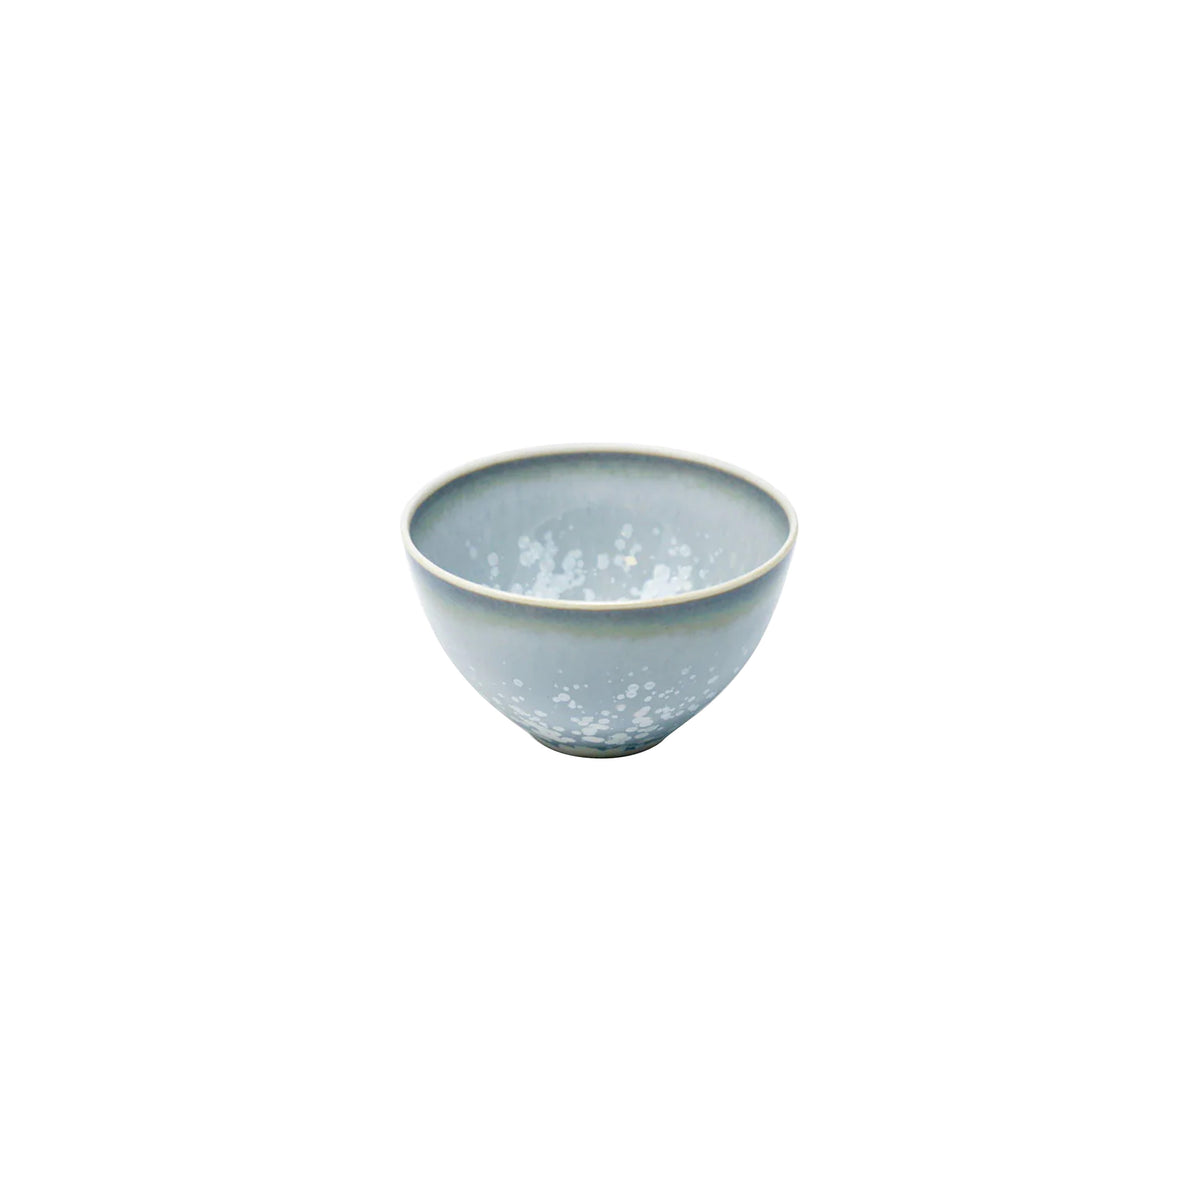 SONG Ocean - Sake bowl